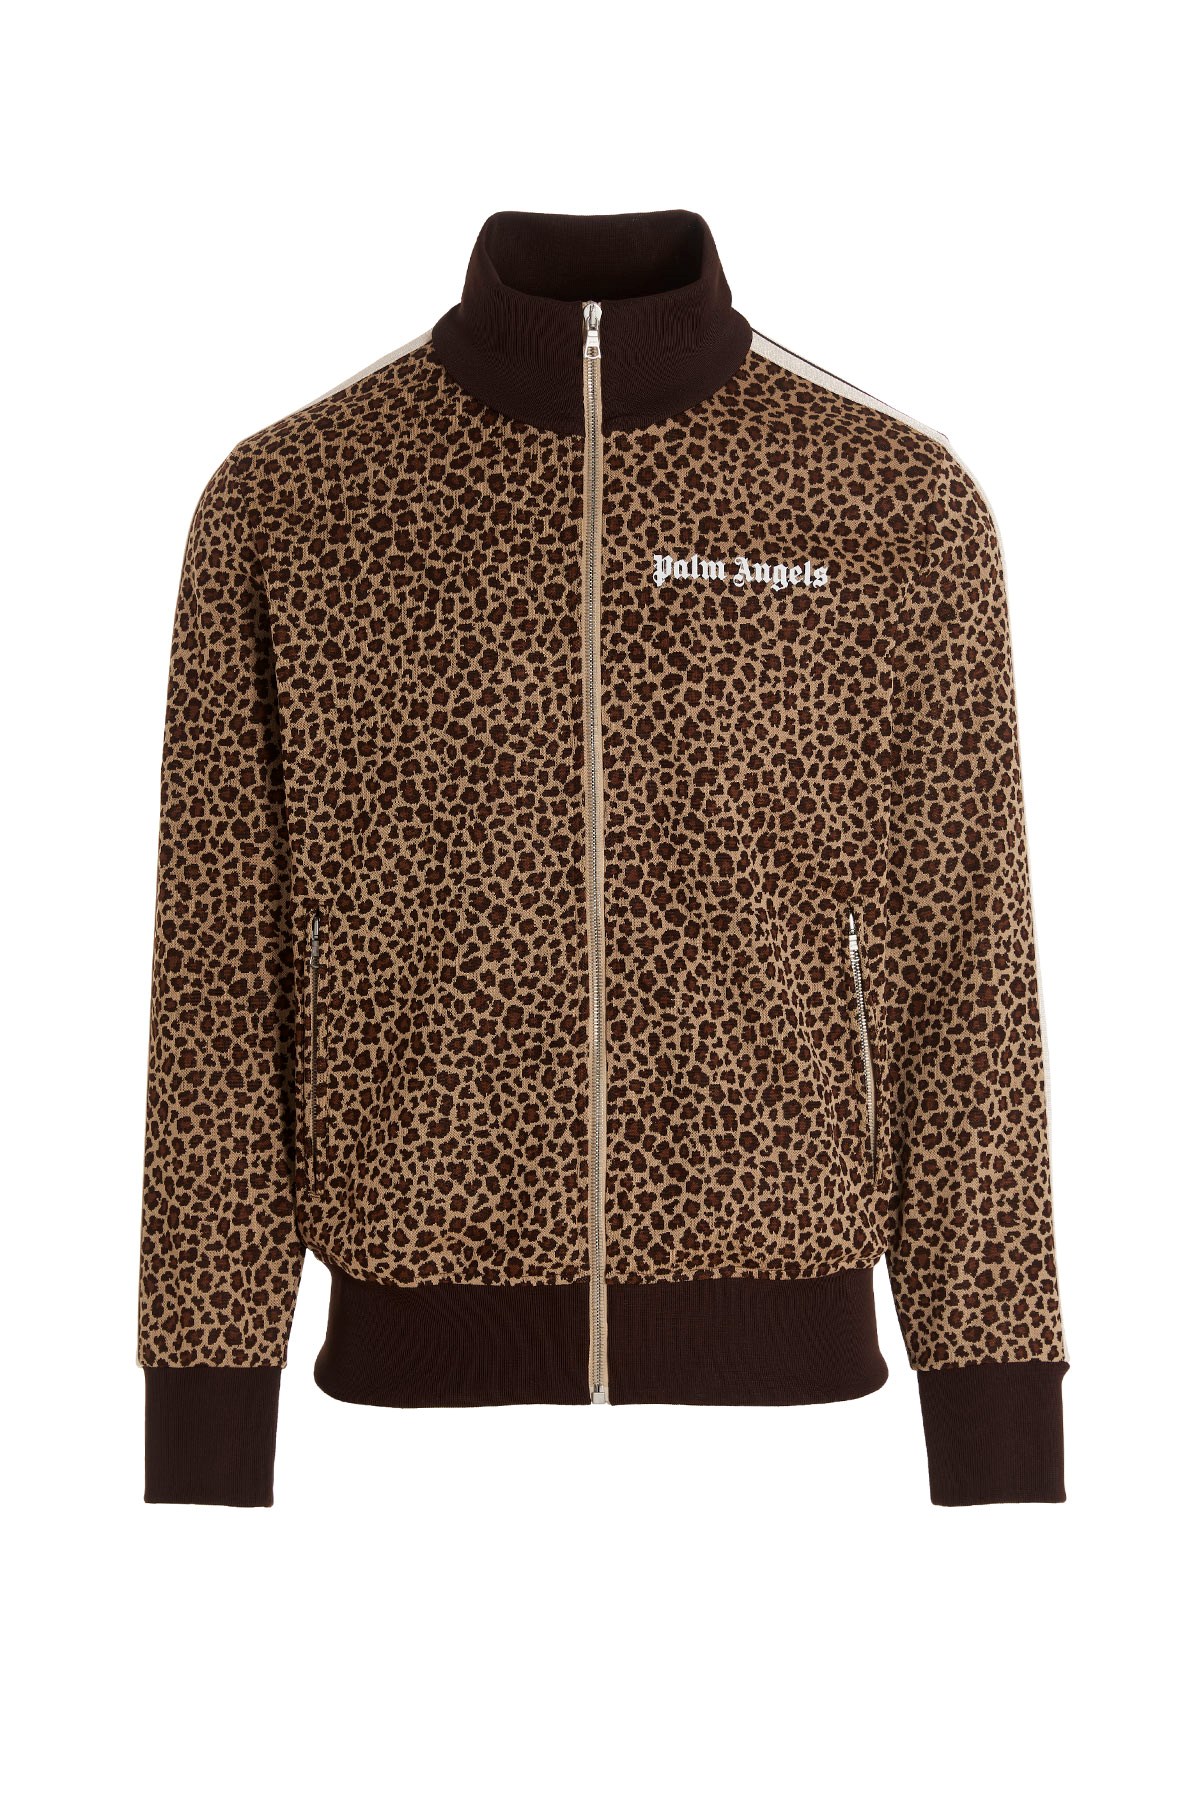 PALM ANGELS Sweatshirt Mit Leopard-Jacquard-Track